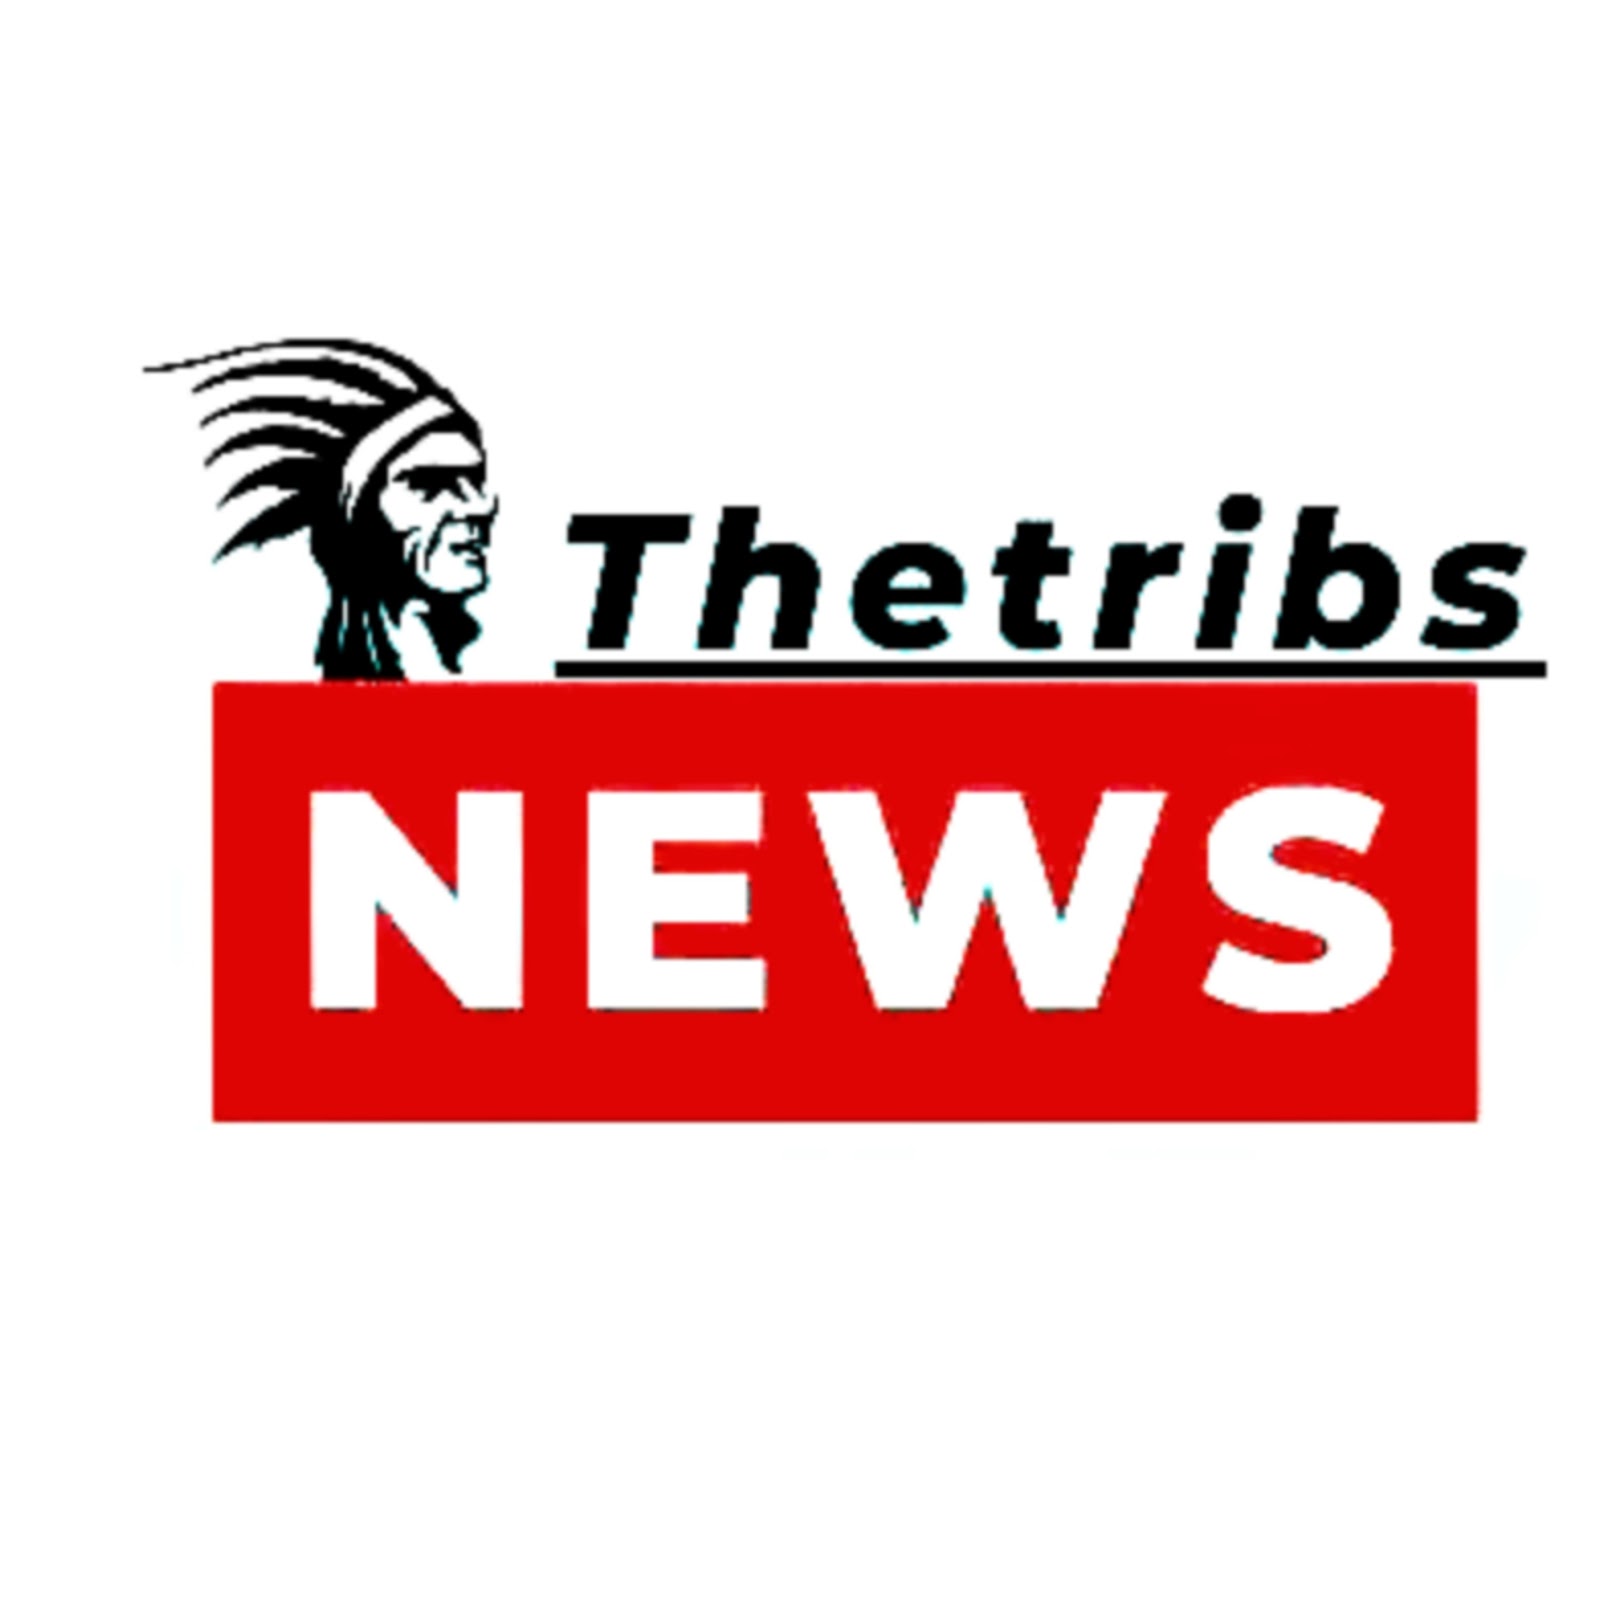 Thetribesnews